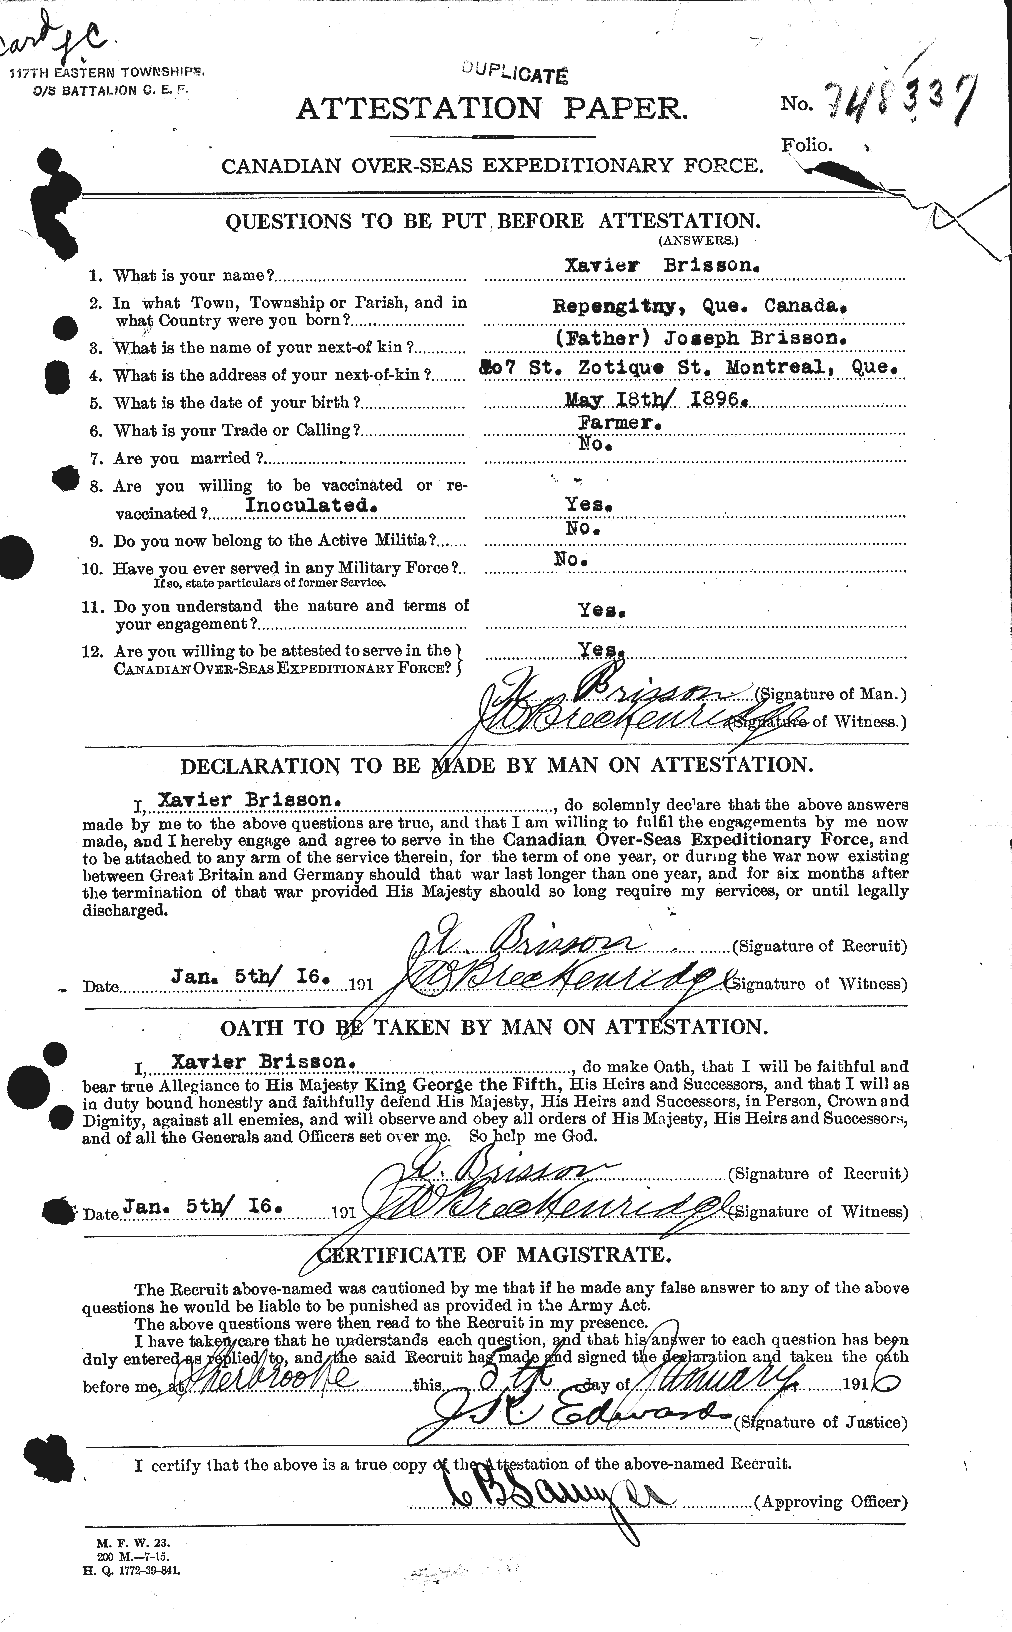 Dossiers du Personnel de la Première Guerre mondiale - CEC 260306a